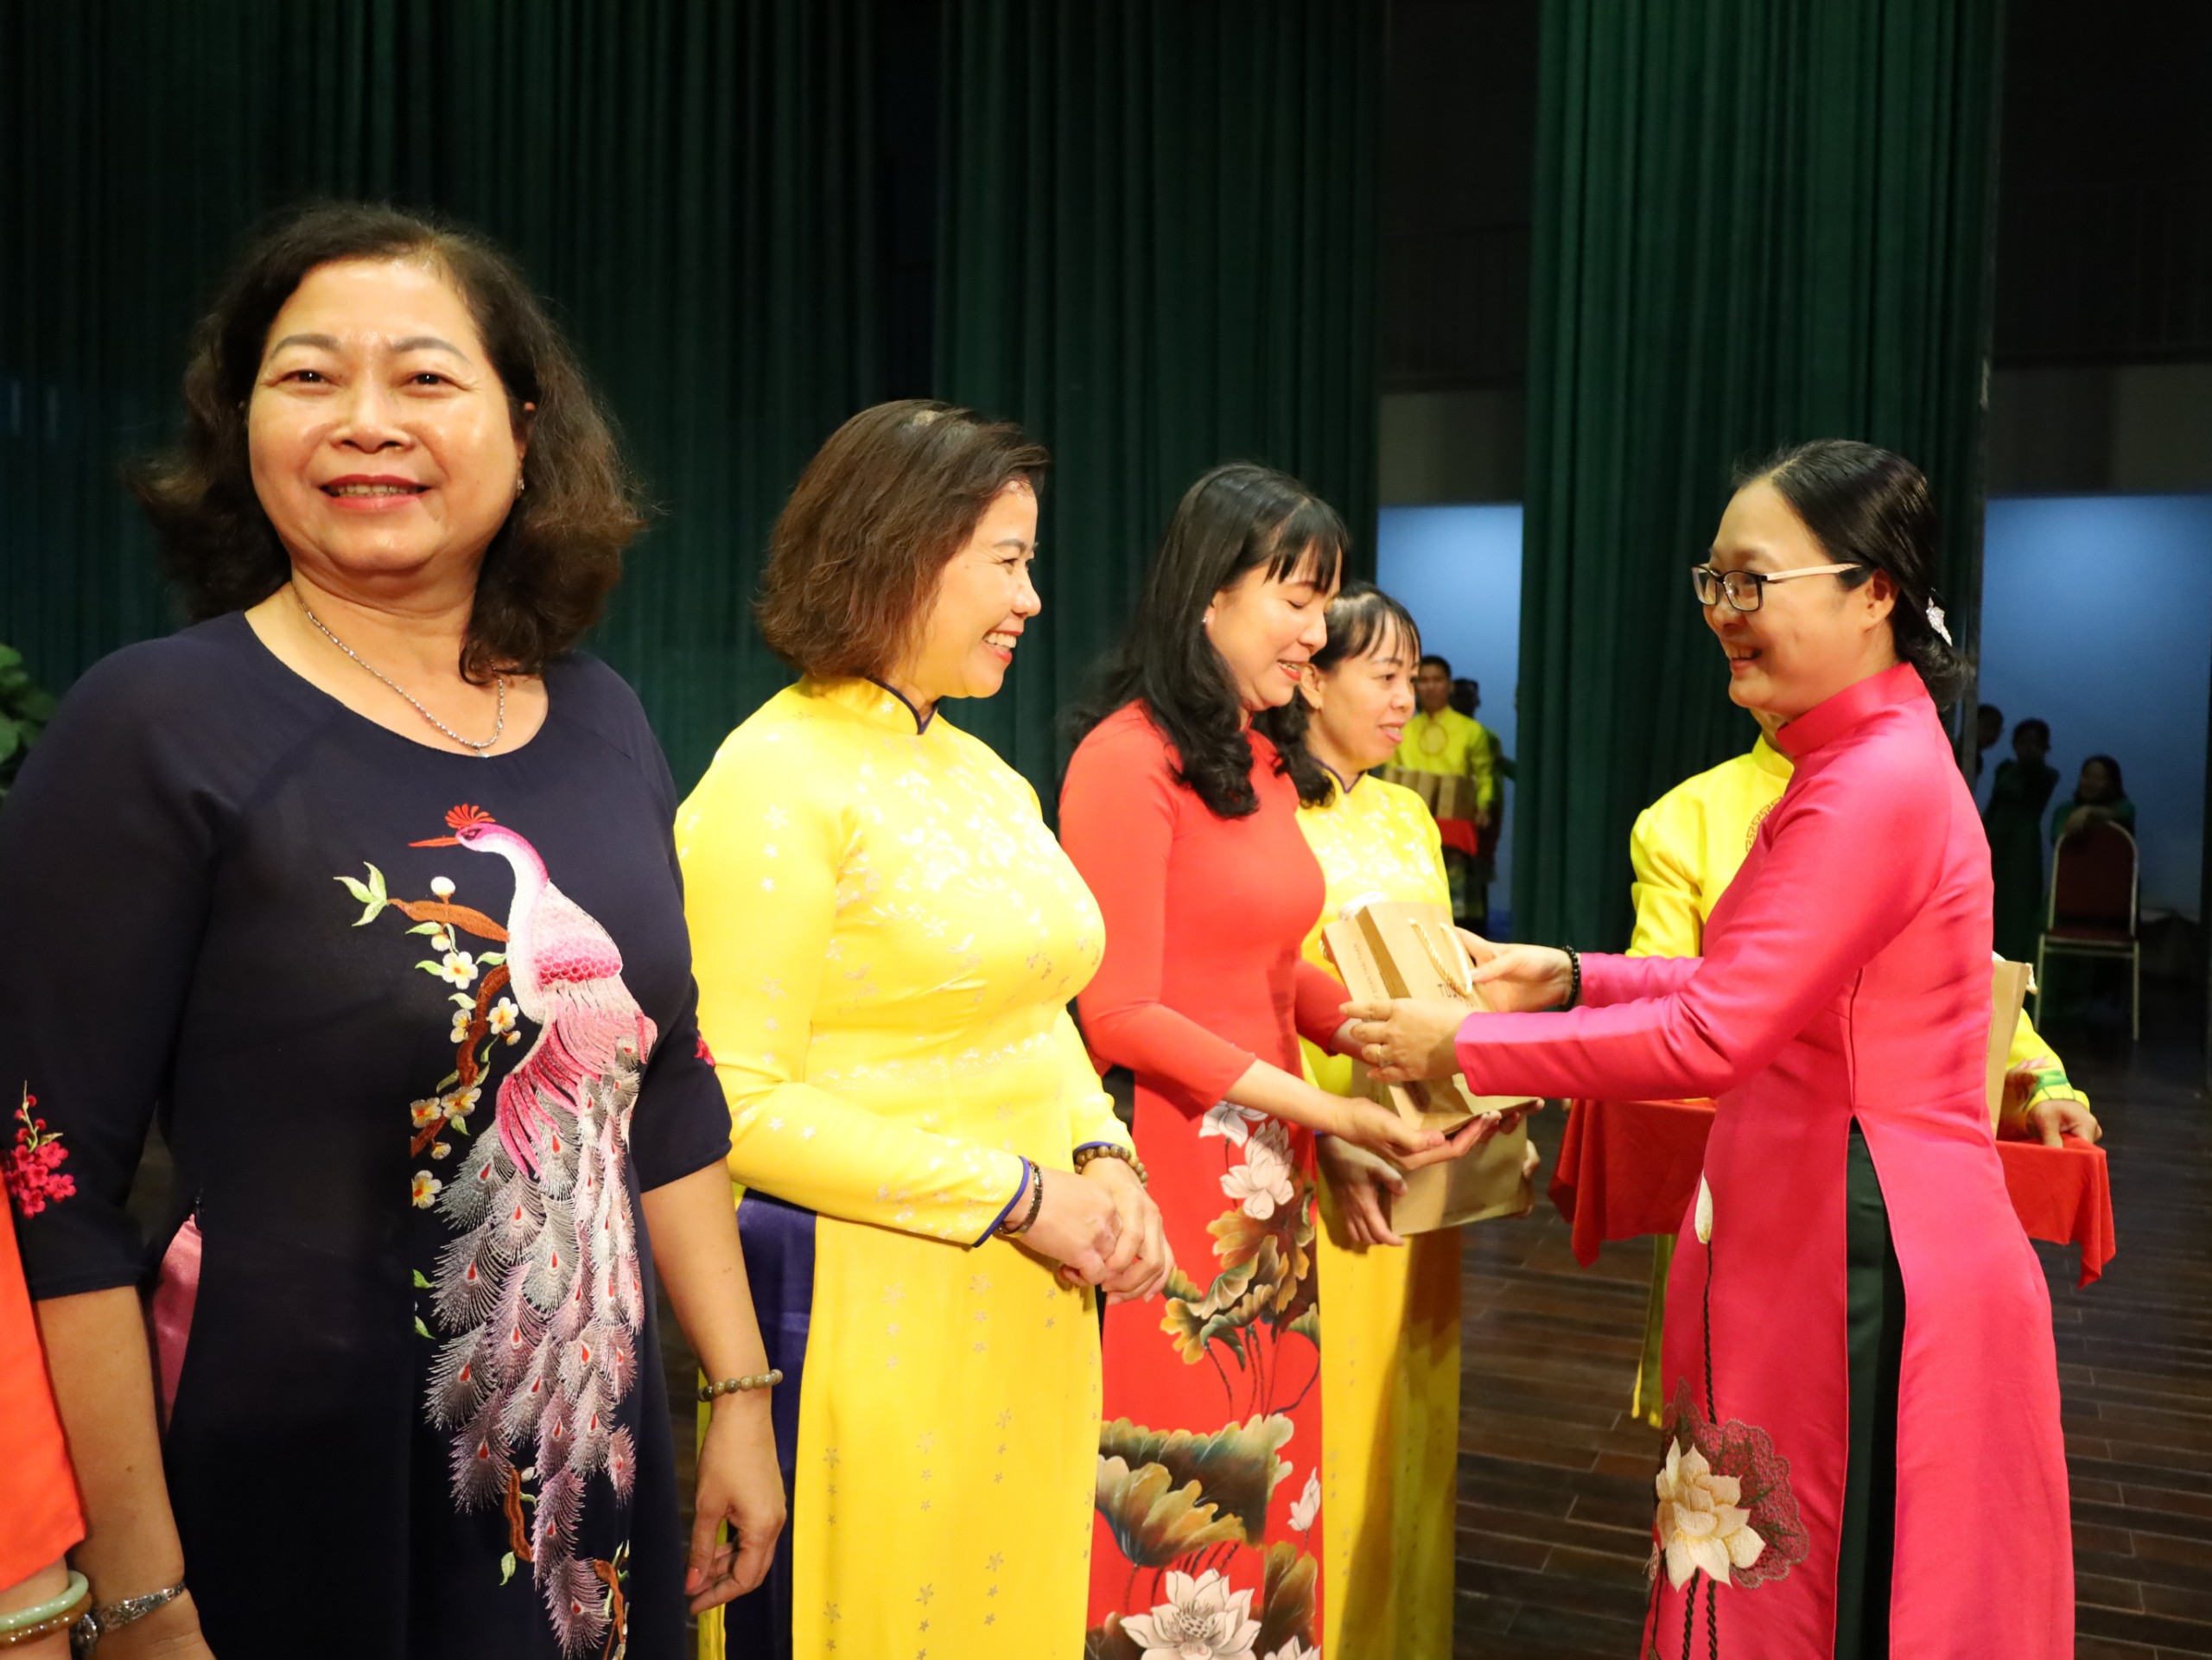 Bà Nguyễn Thị Quyên Thanh - Phó Chủ tịch UBND tỉnh, Trưởng Ban chỉ đạo Bình đẳng giới và vì sự tiến bộ của phụ nữ tỉnh Vĩnh Long tặng quà cho các đại biểu.